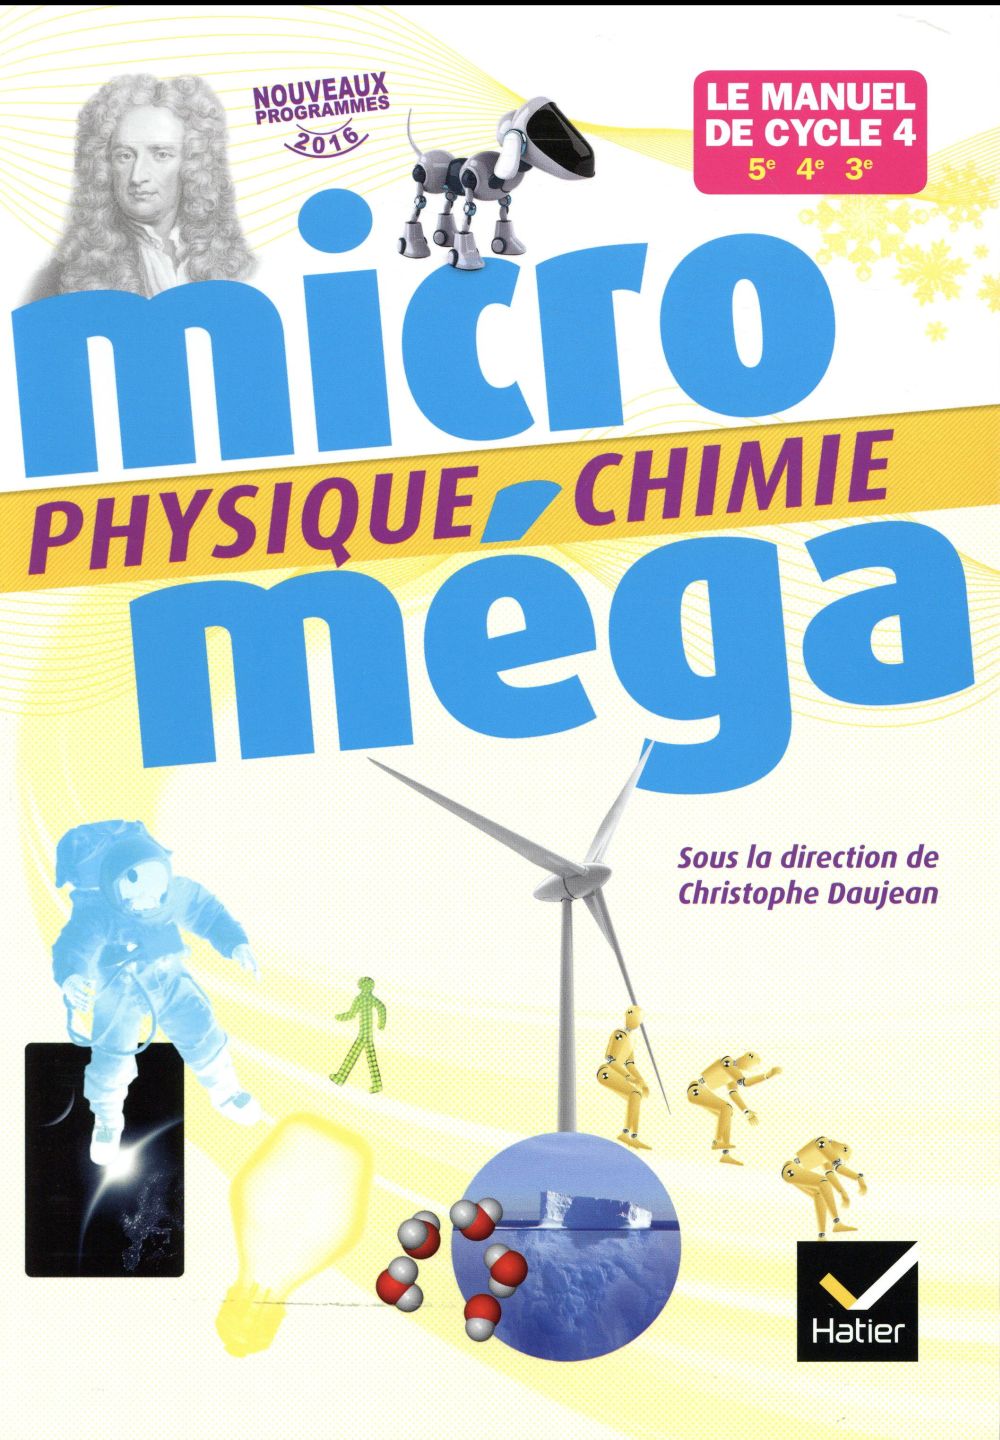 Le Livre Scolaire Physique Chimie 4eme Micromega - physique-chimie - cycle 4 - livre de l'élève (édition 2017) :  Fabrice Massa,Christophe Daujean,Fabien Alibert - 2401000097 - Manuels  scolaires | Cultura